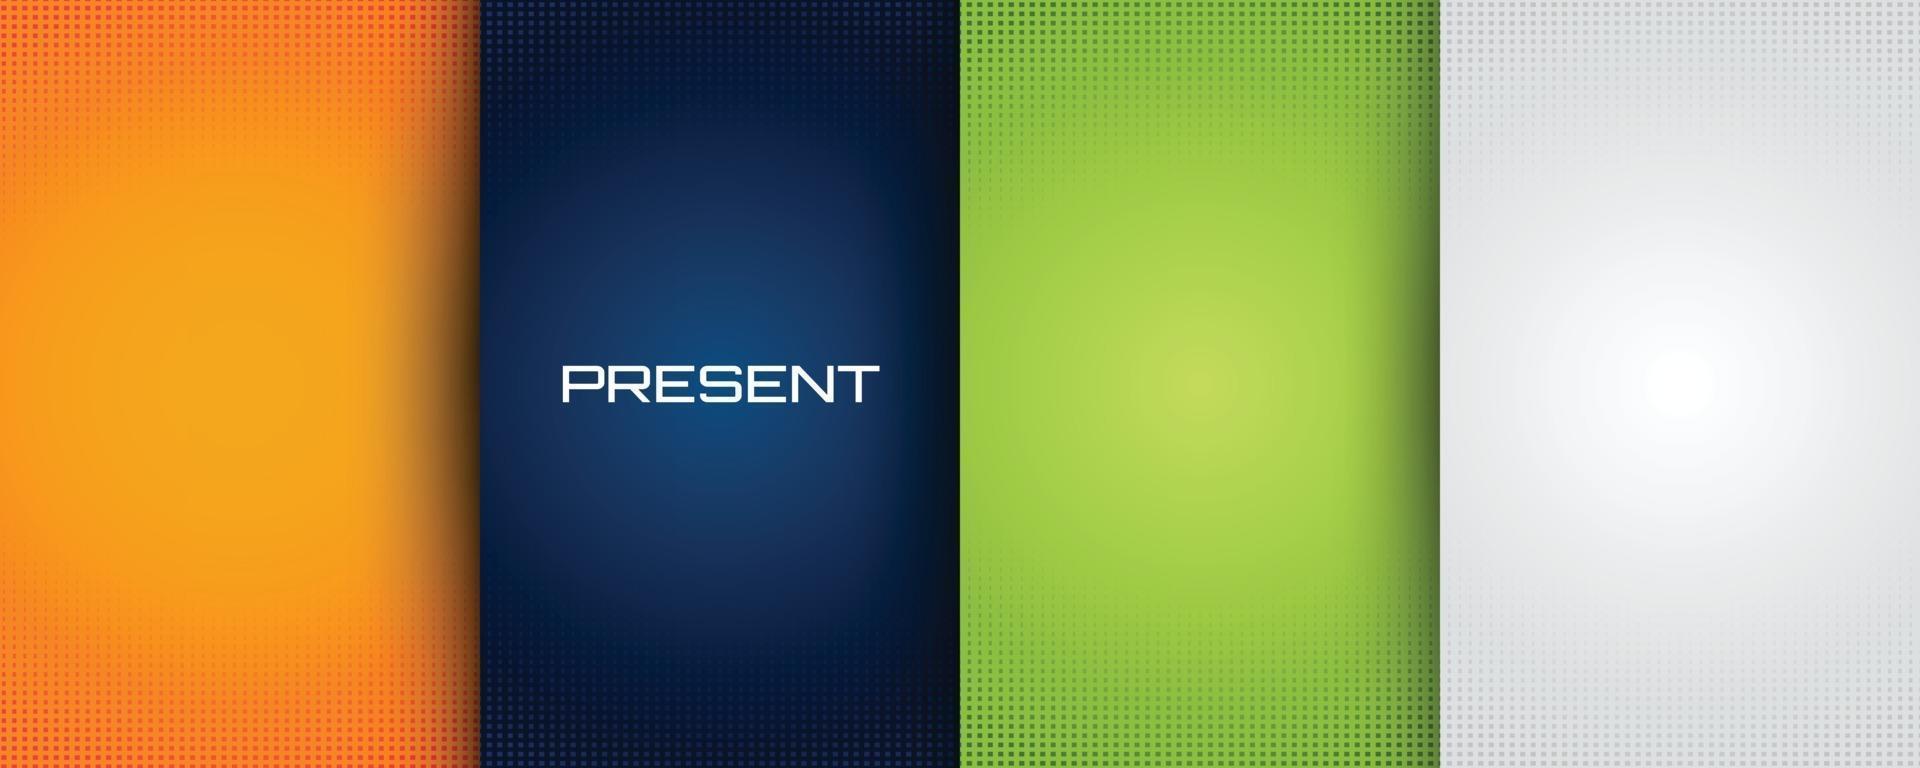 Bộ ảnh bìa và hình nền nền xanh gradient màu nhẹ: Nếu bạn đang tìm kiếm một bức hình nền đẹp để làm nền cho màn hình máy tính của mình, con đường dẫn tới sự lựa chọn hoàn hảo vẫn còn dài. Hãy xem bộ sưu tập bìa và hình nền gradient màu nhẹ ở màu xanh, đem lại cảm giác thanh nhã và tươi mới.